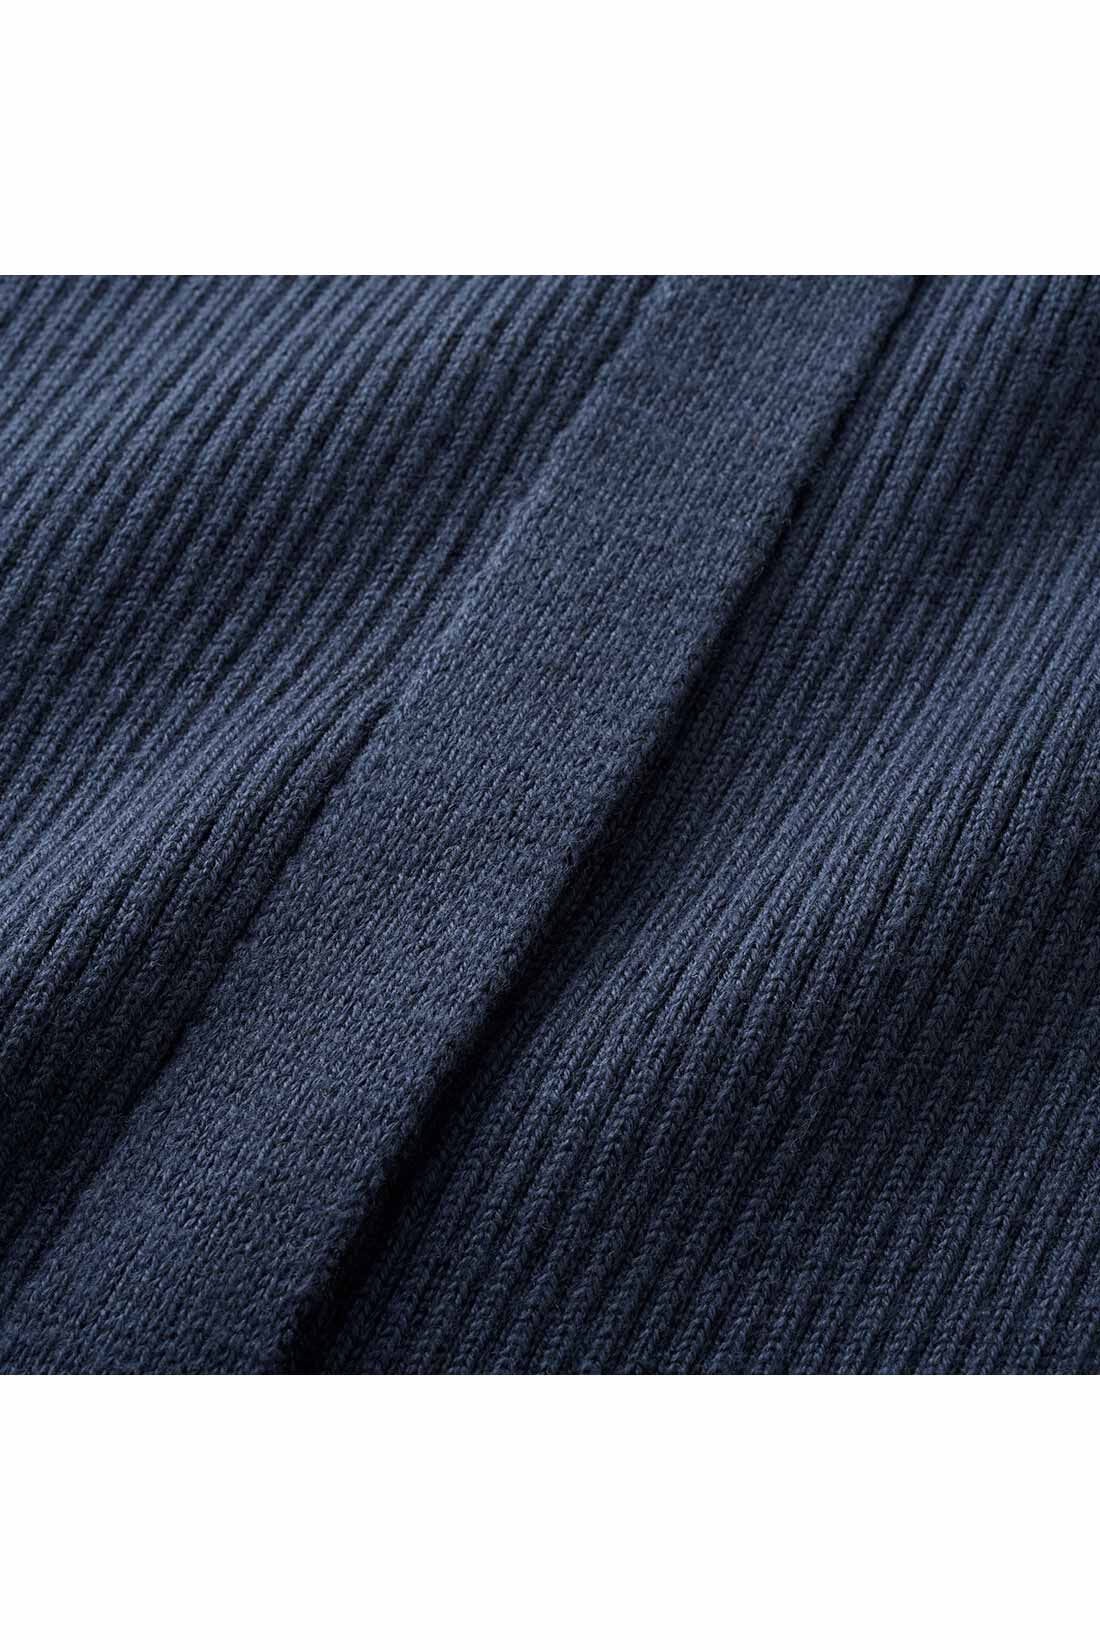 IEDIT|IEDIT[イディット]　Iラインシルエットのスリットデザインリブニットスカート〈ブラック〉|体形を拾いにくい厚みのあるリブ素材。コーデを選ばないほどよいリブ幅です。